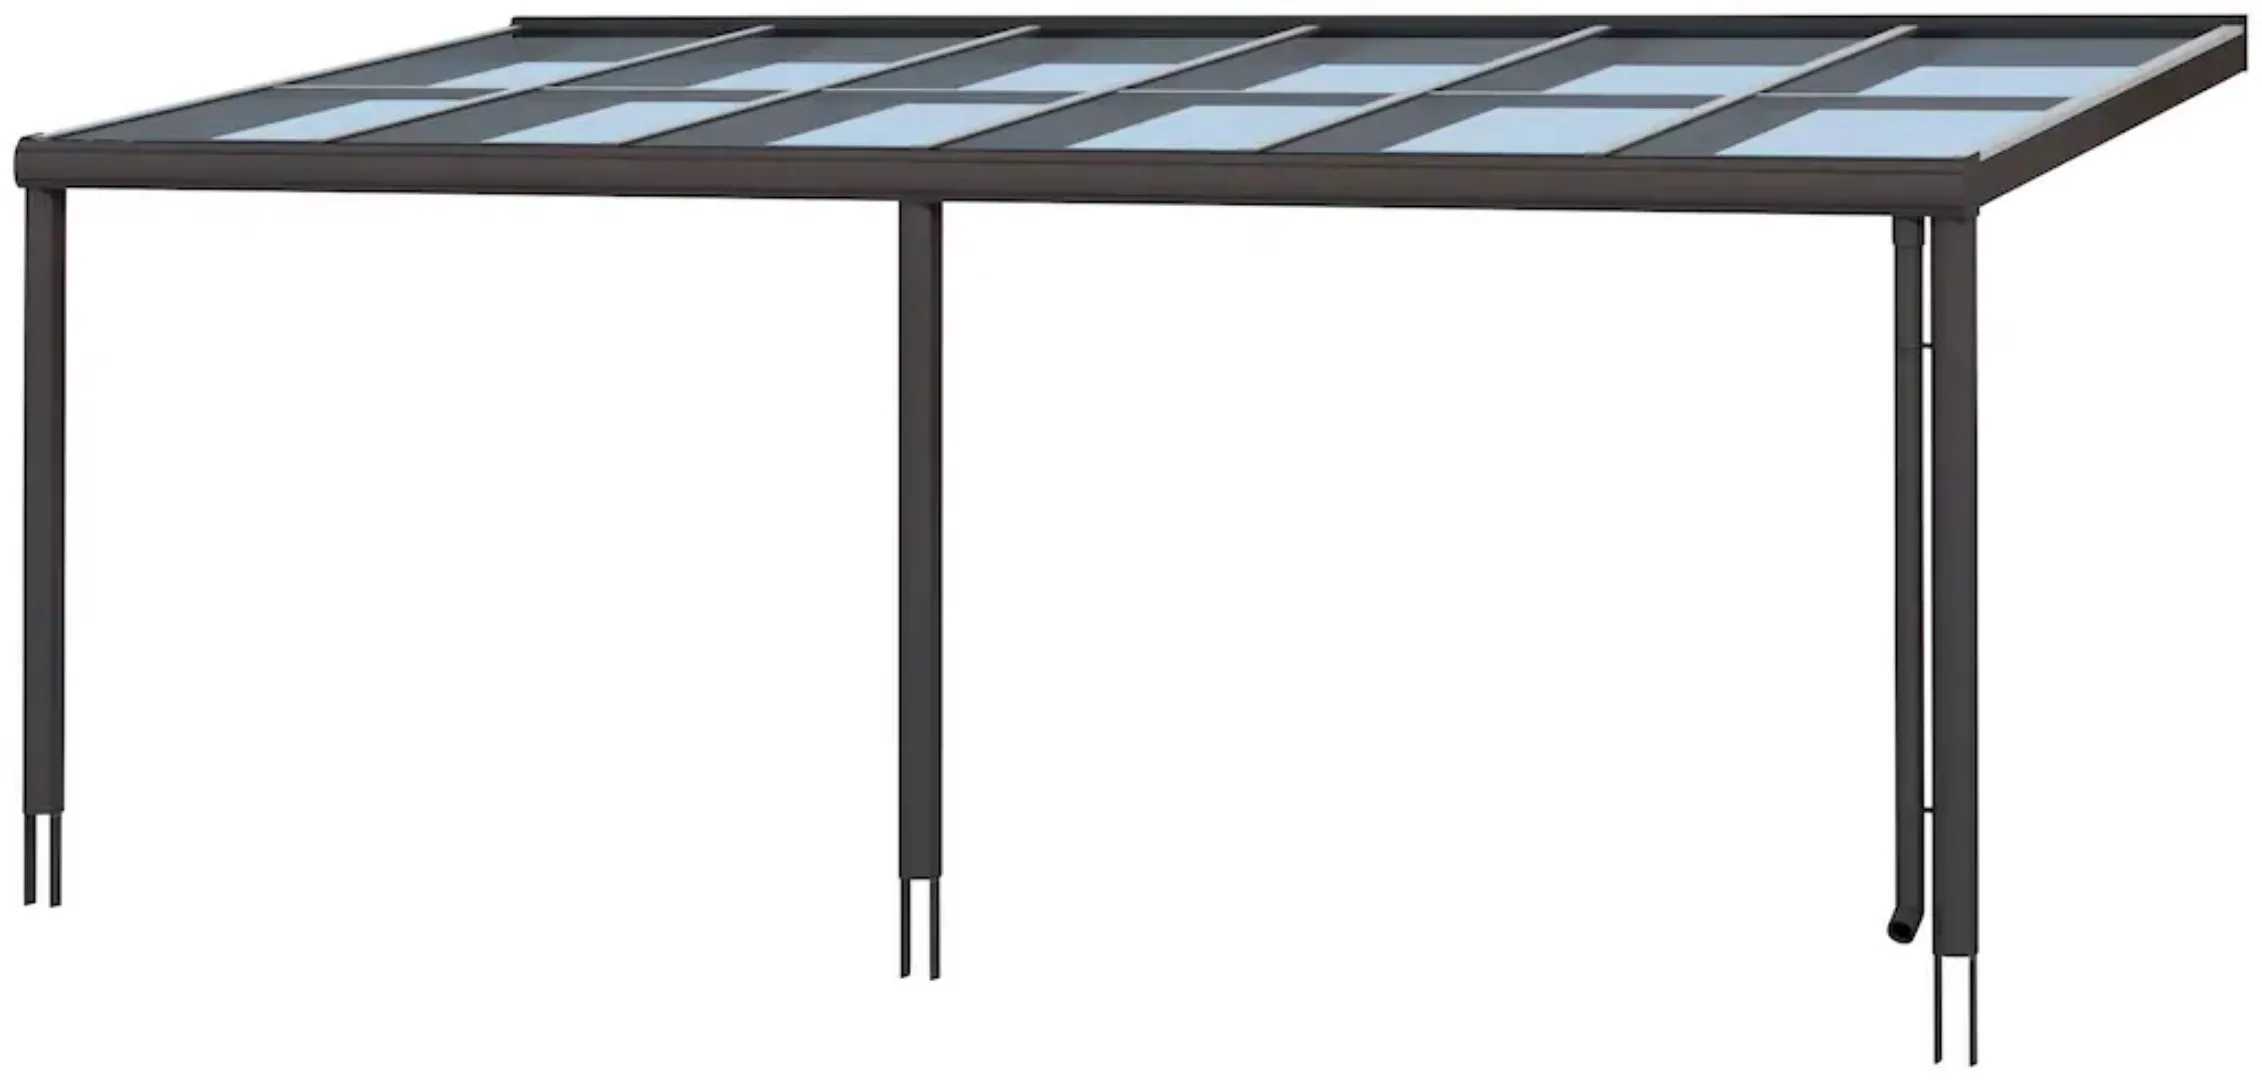 Skan Holz Terrassenüberdachung Monza 648 x 257 cm Aluminium Anthrazit günstig online kaufen